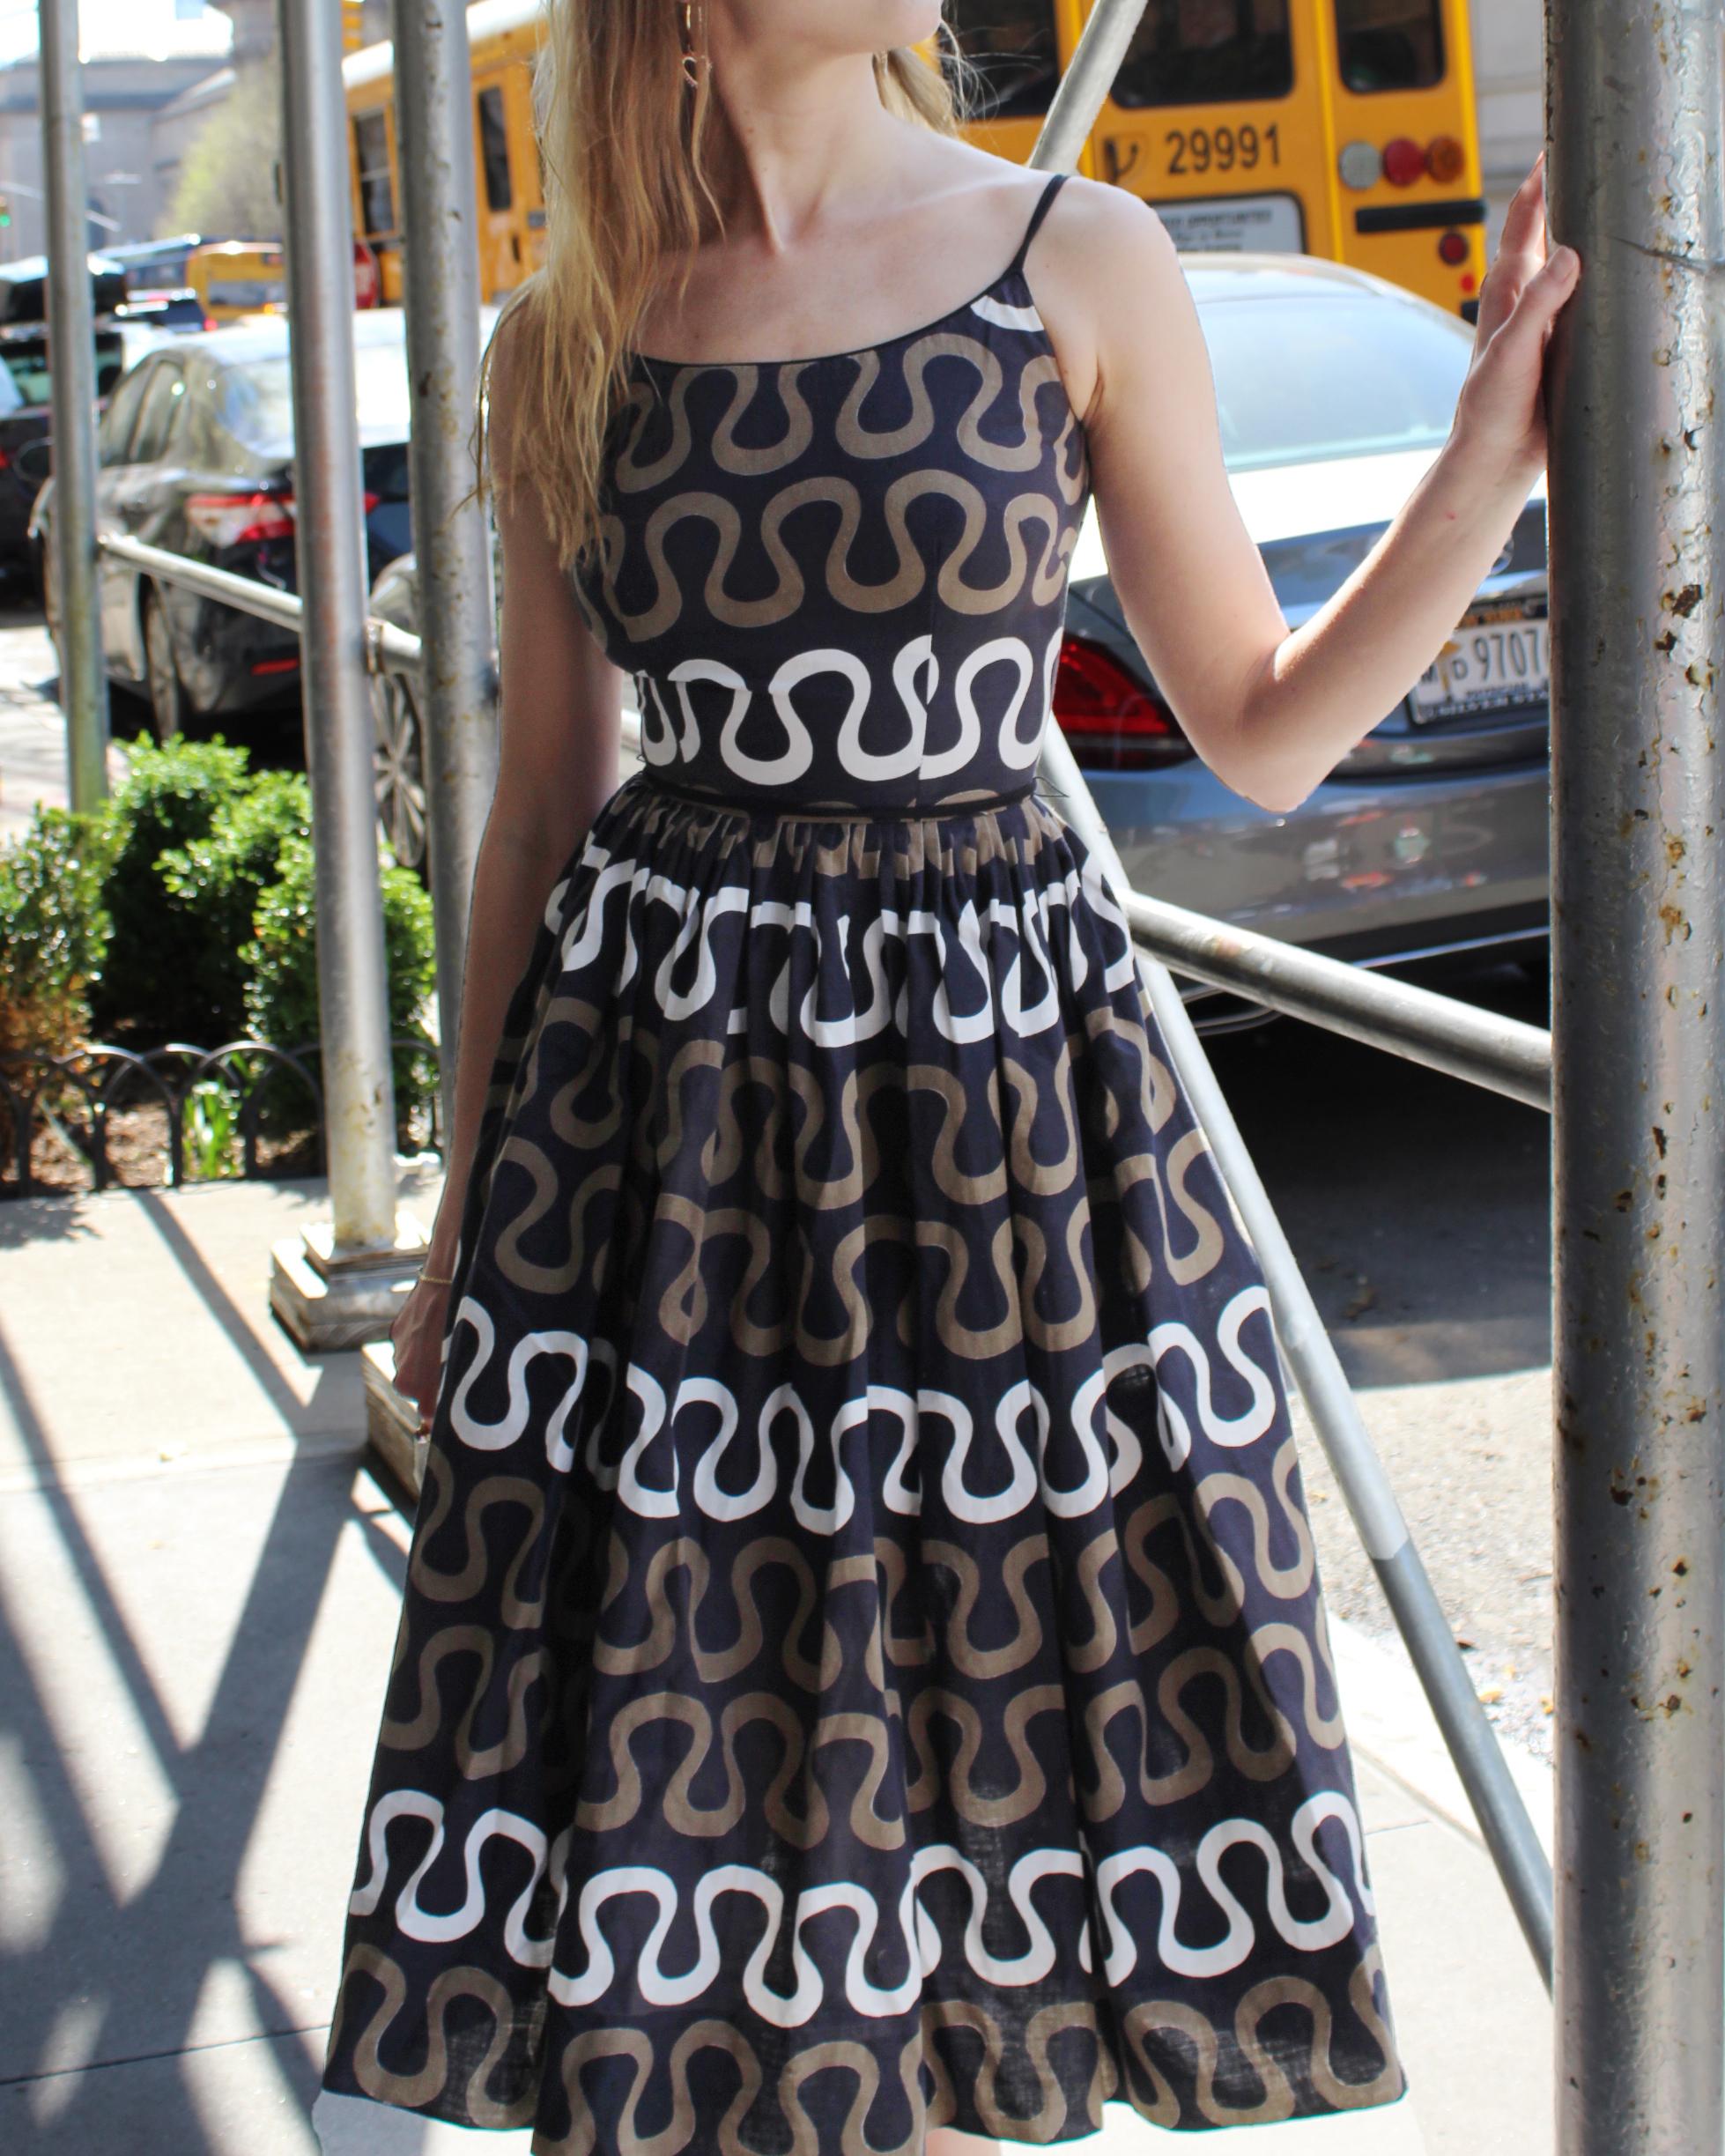 Ich liebe den Serpentinen-Print auf diesem Vintage-Sommerkleid, der gleichzeitig geometrisch und organisch wirkt. Es ist aus atmungsaktivem Baumwollstoff gefertigt - perfekt für jedes Wetter. Es ist so schön konstruiert: Das taillierte Mieder geht